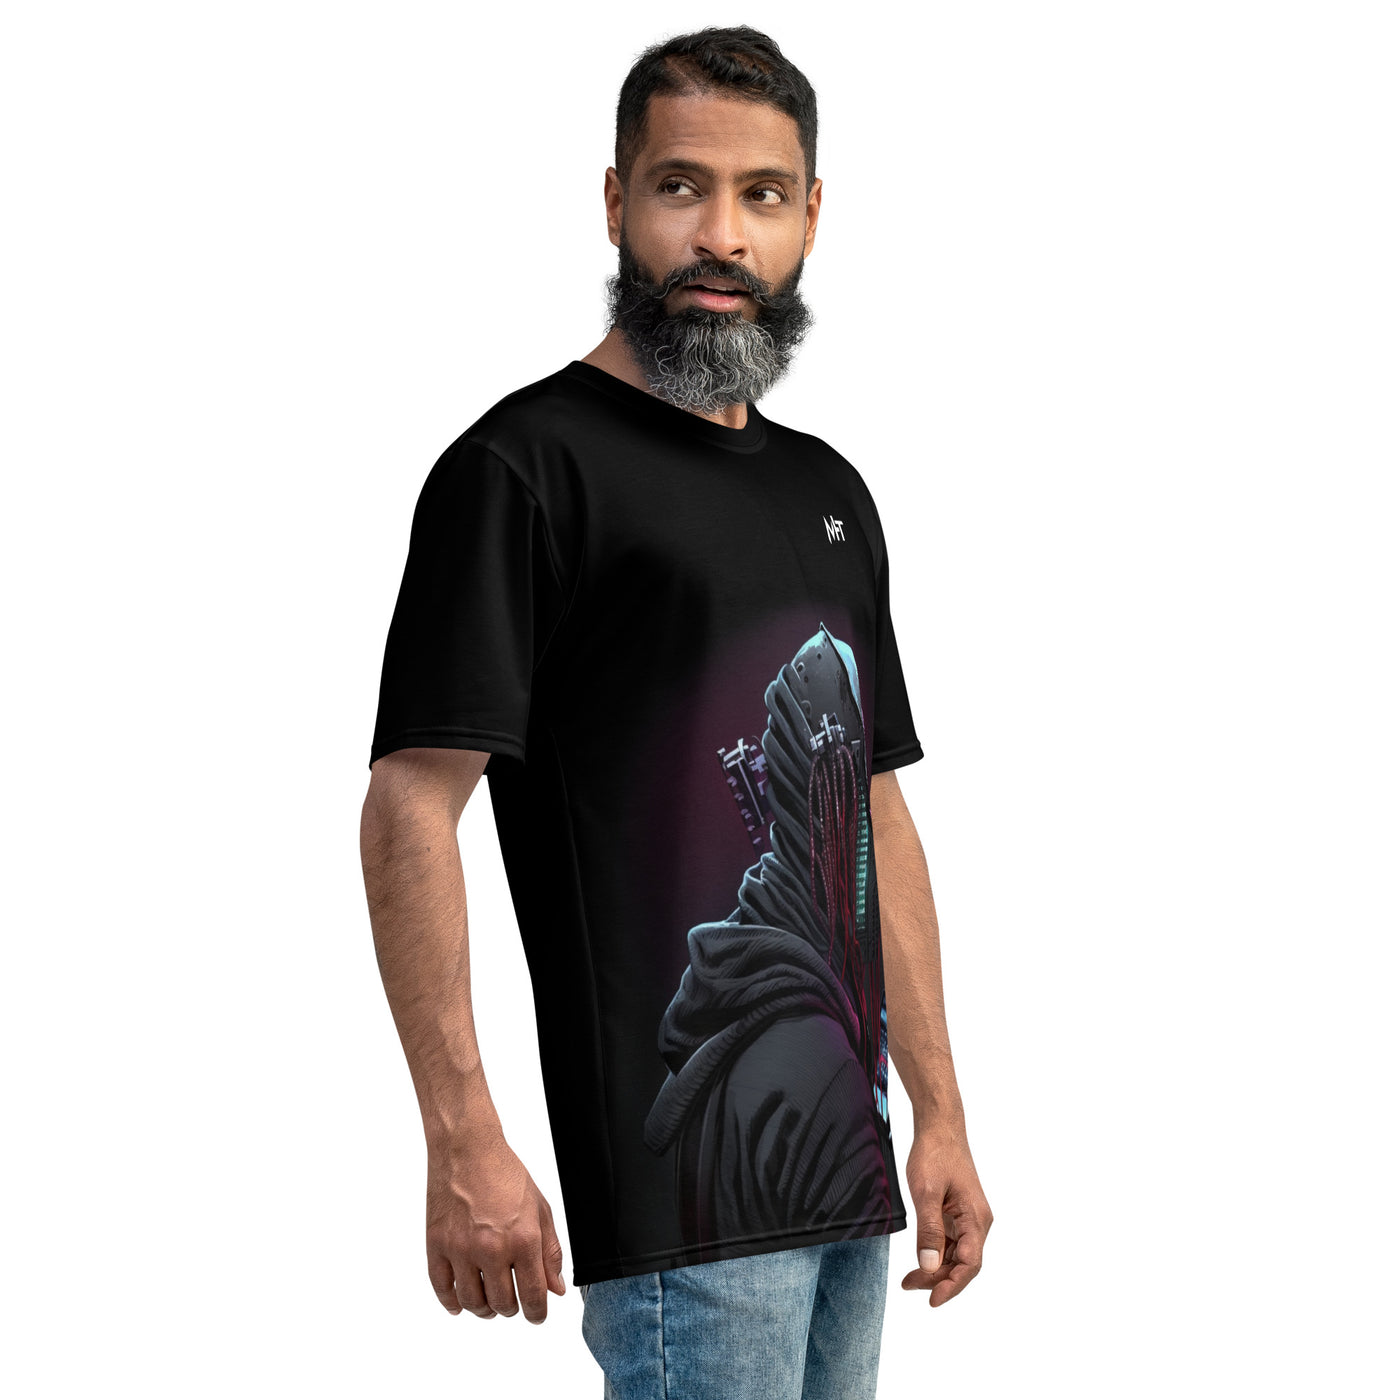 CyberWare Assassin V4 - Men's t-shirt